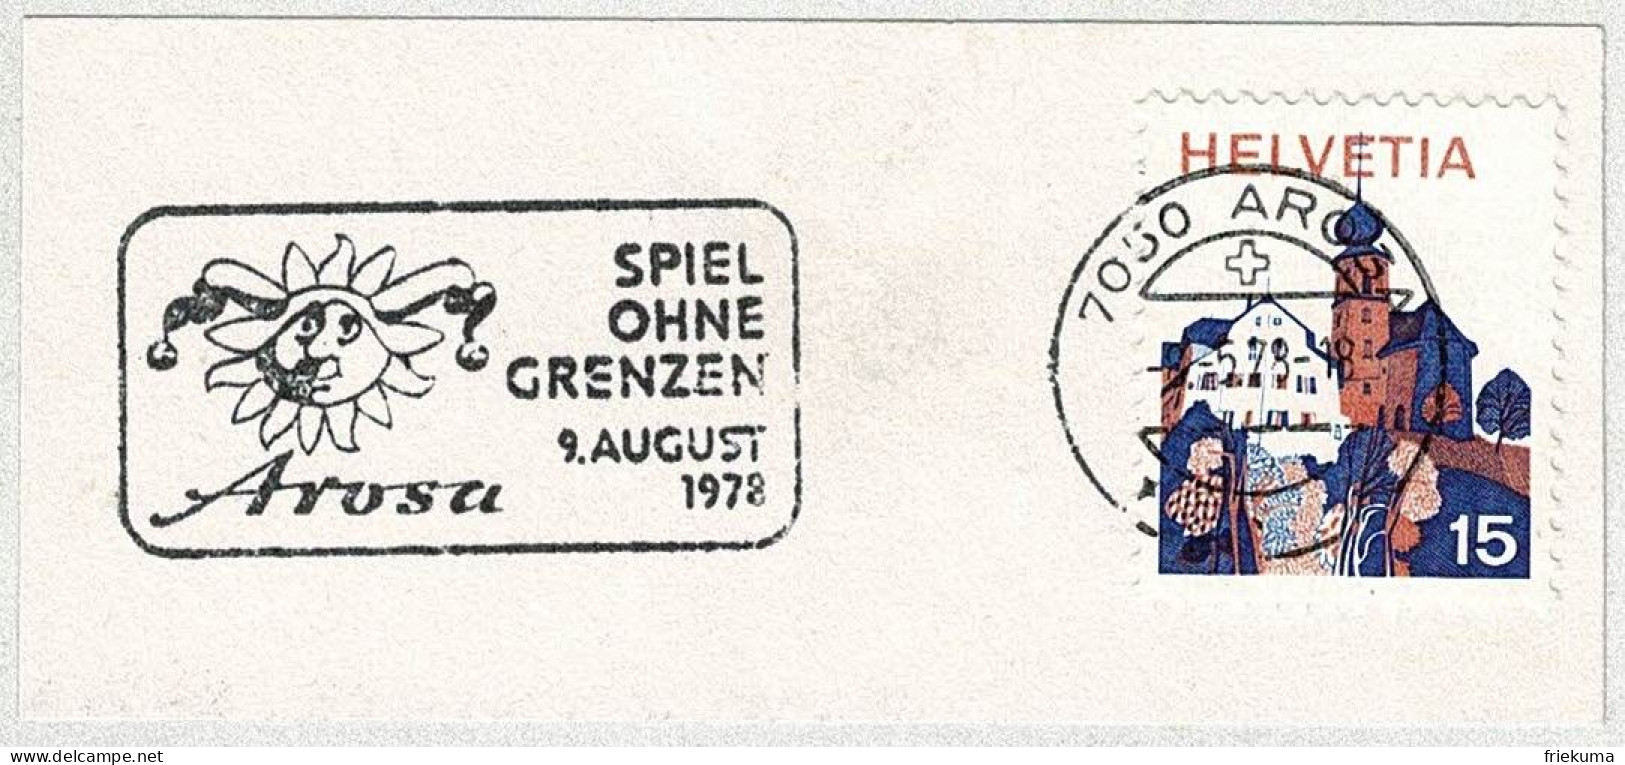 Schweiz / Helvetia 1978, Flaggenstempel Spiel Ohne Grenzen Arosa, Jeu Sans Frontières / Play Without Limits - Non Classés